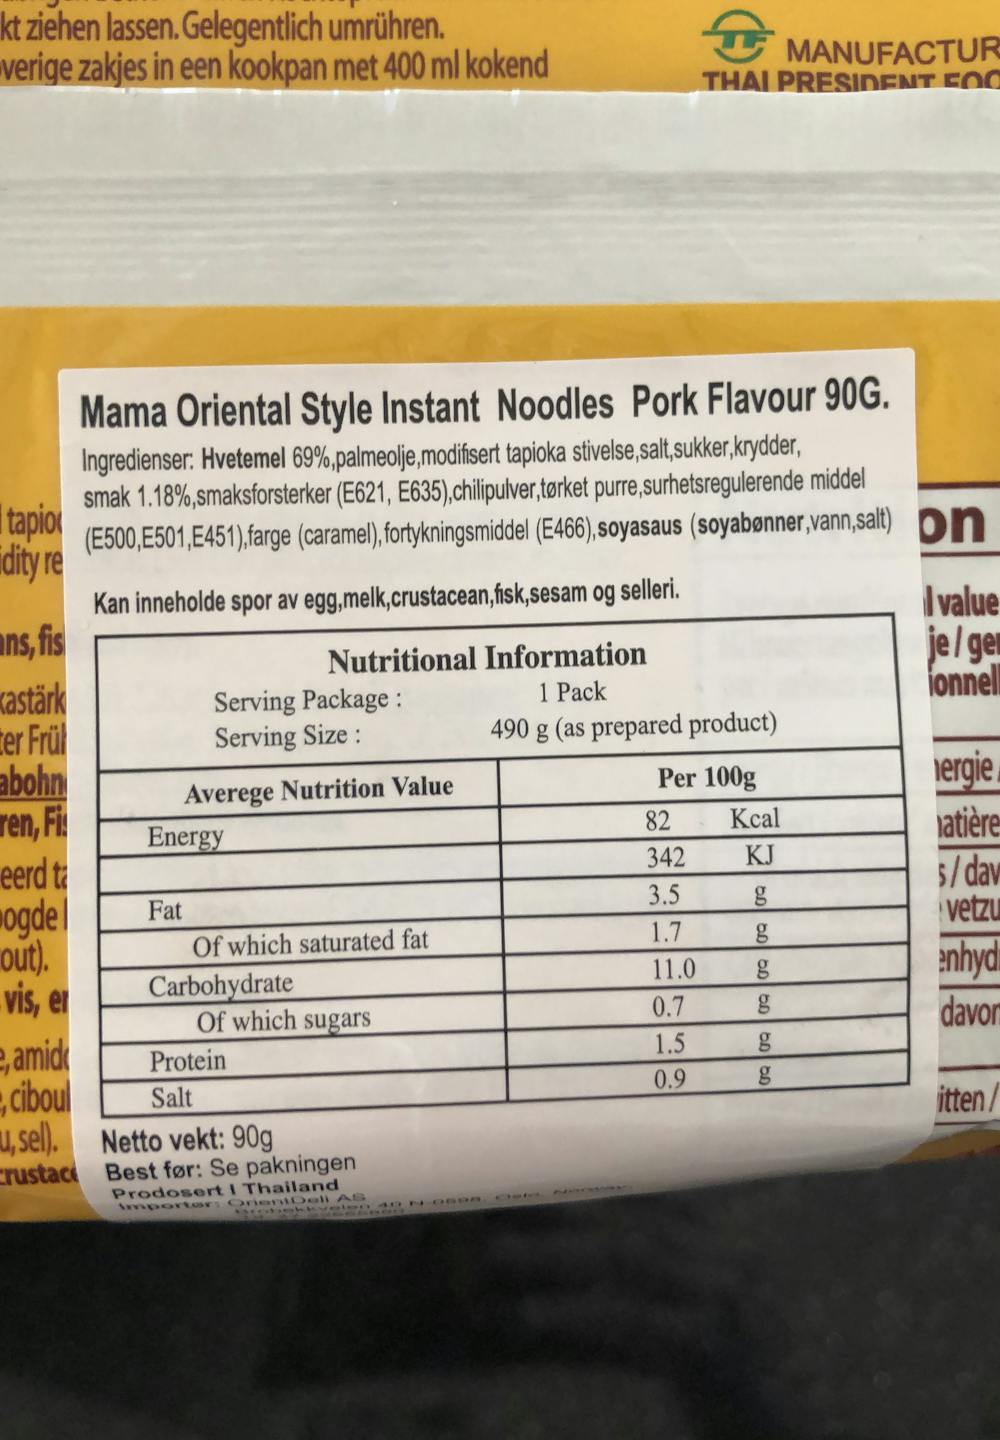 Ingredienslisten til Pork flavour, Mama